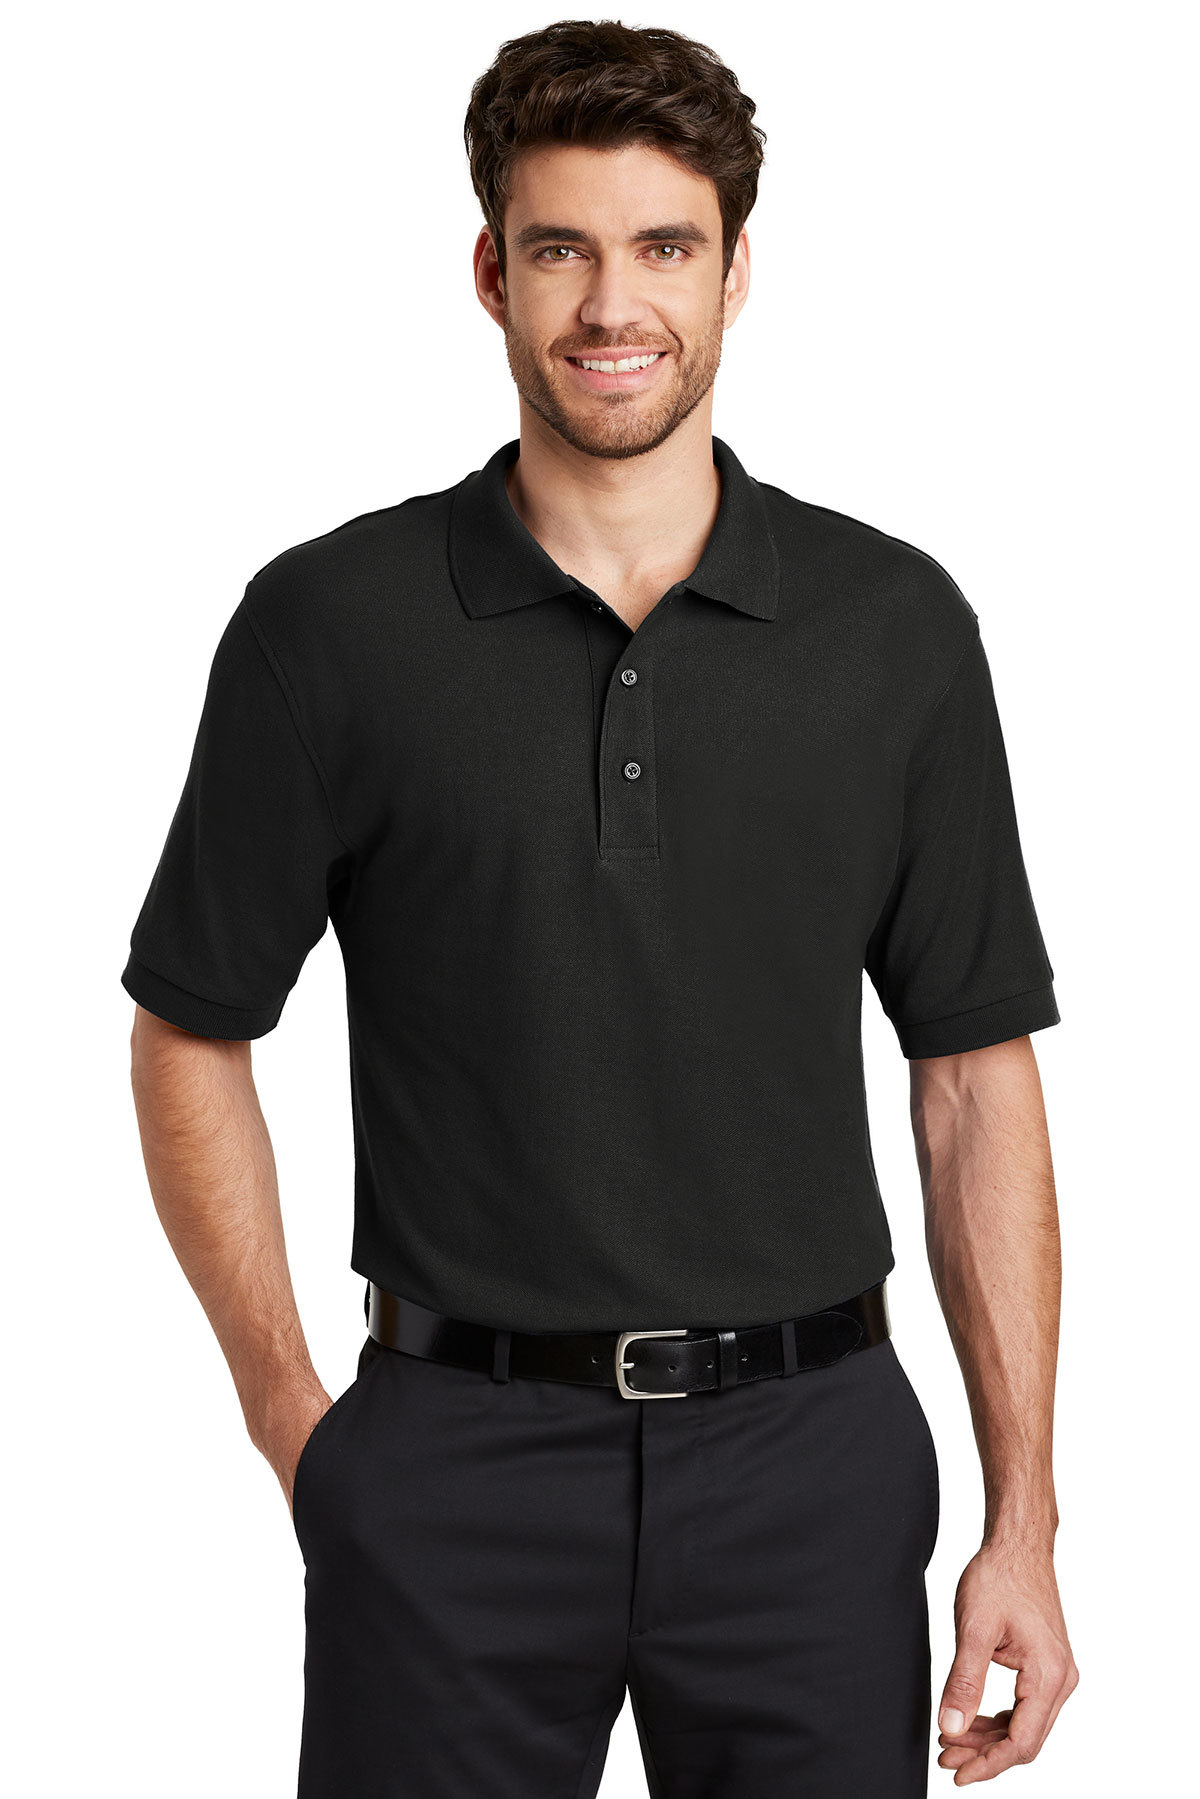 Men’s Port Authority Polo Shirt – #K500 | Central Uniforms